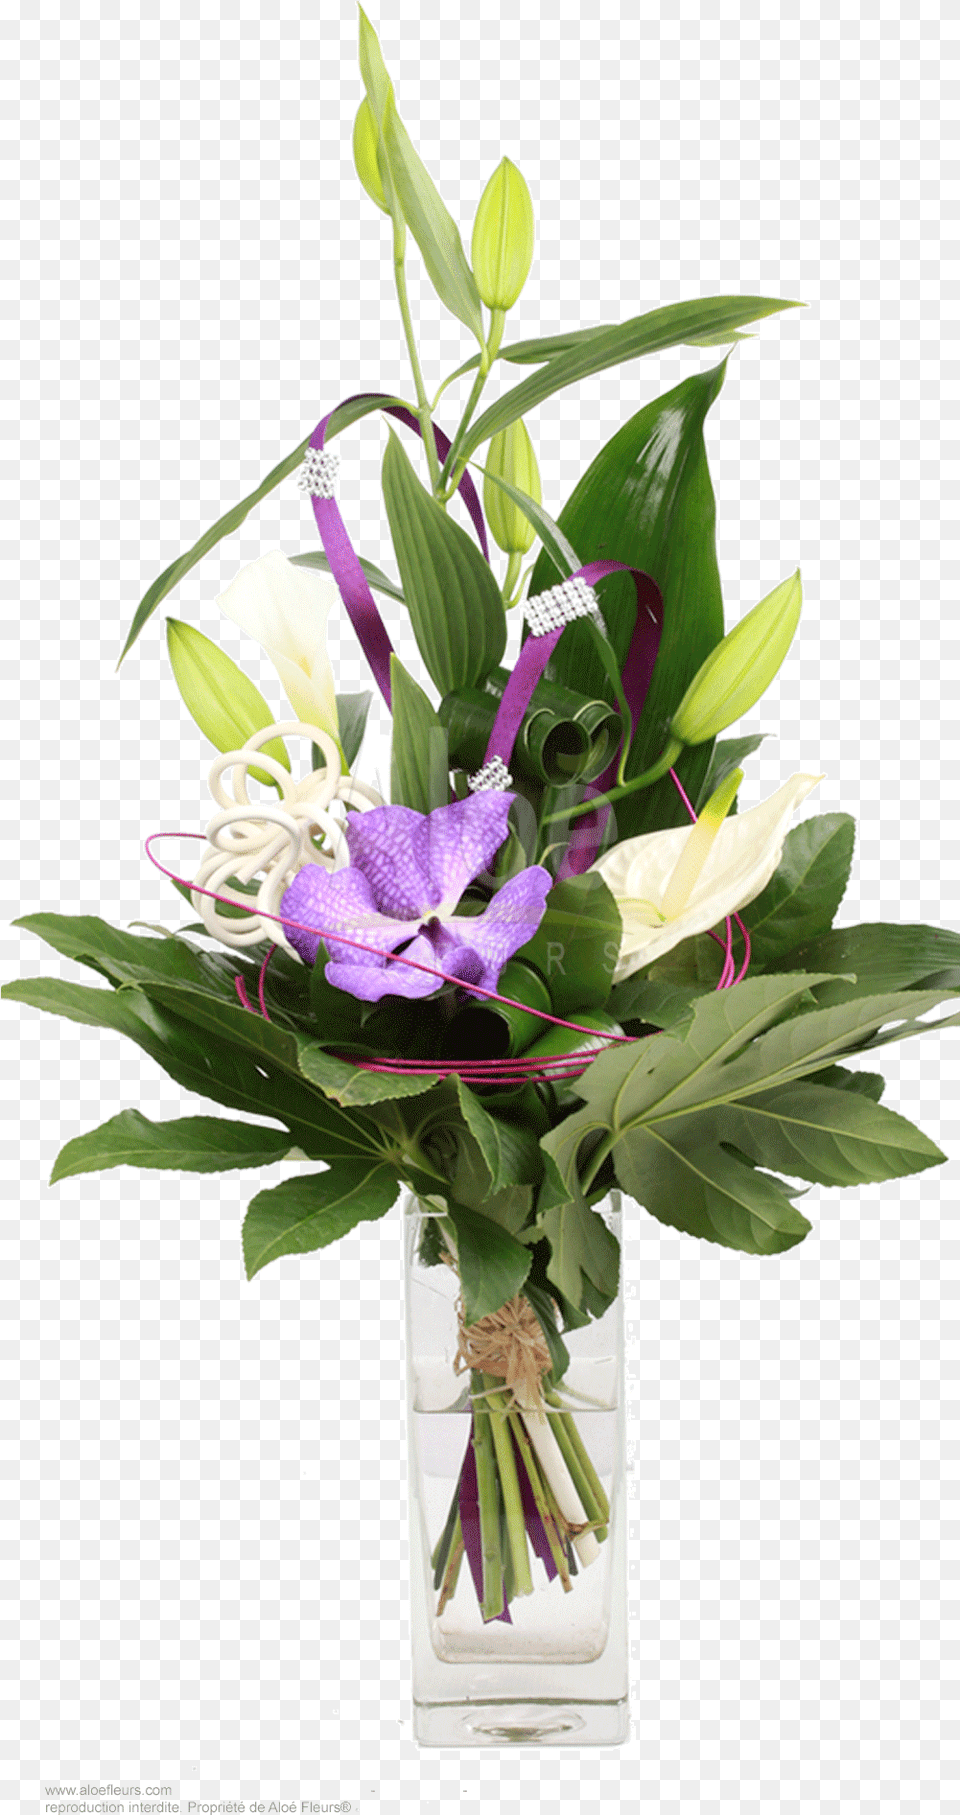 Bouquets De Fleurs Portable Network Graphics, Flower, Flower Arrangement, Flower Bouquet, Plant Free Transparent Png